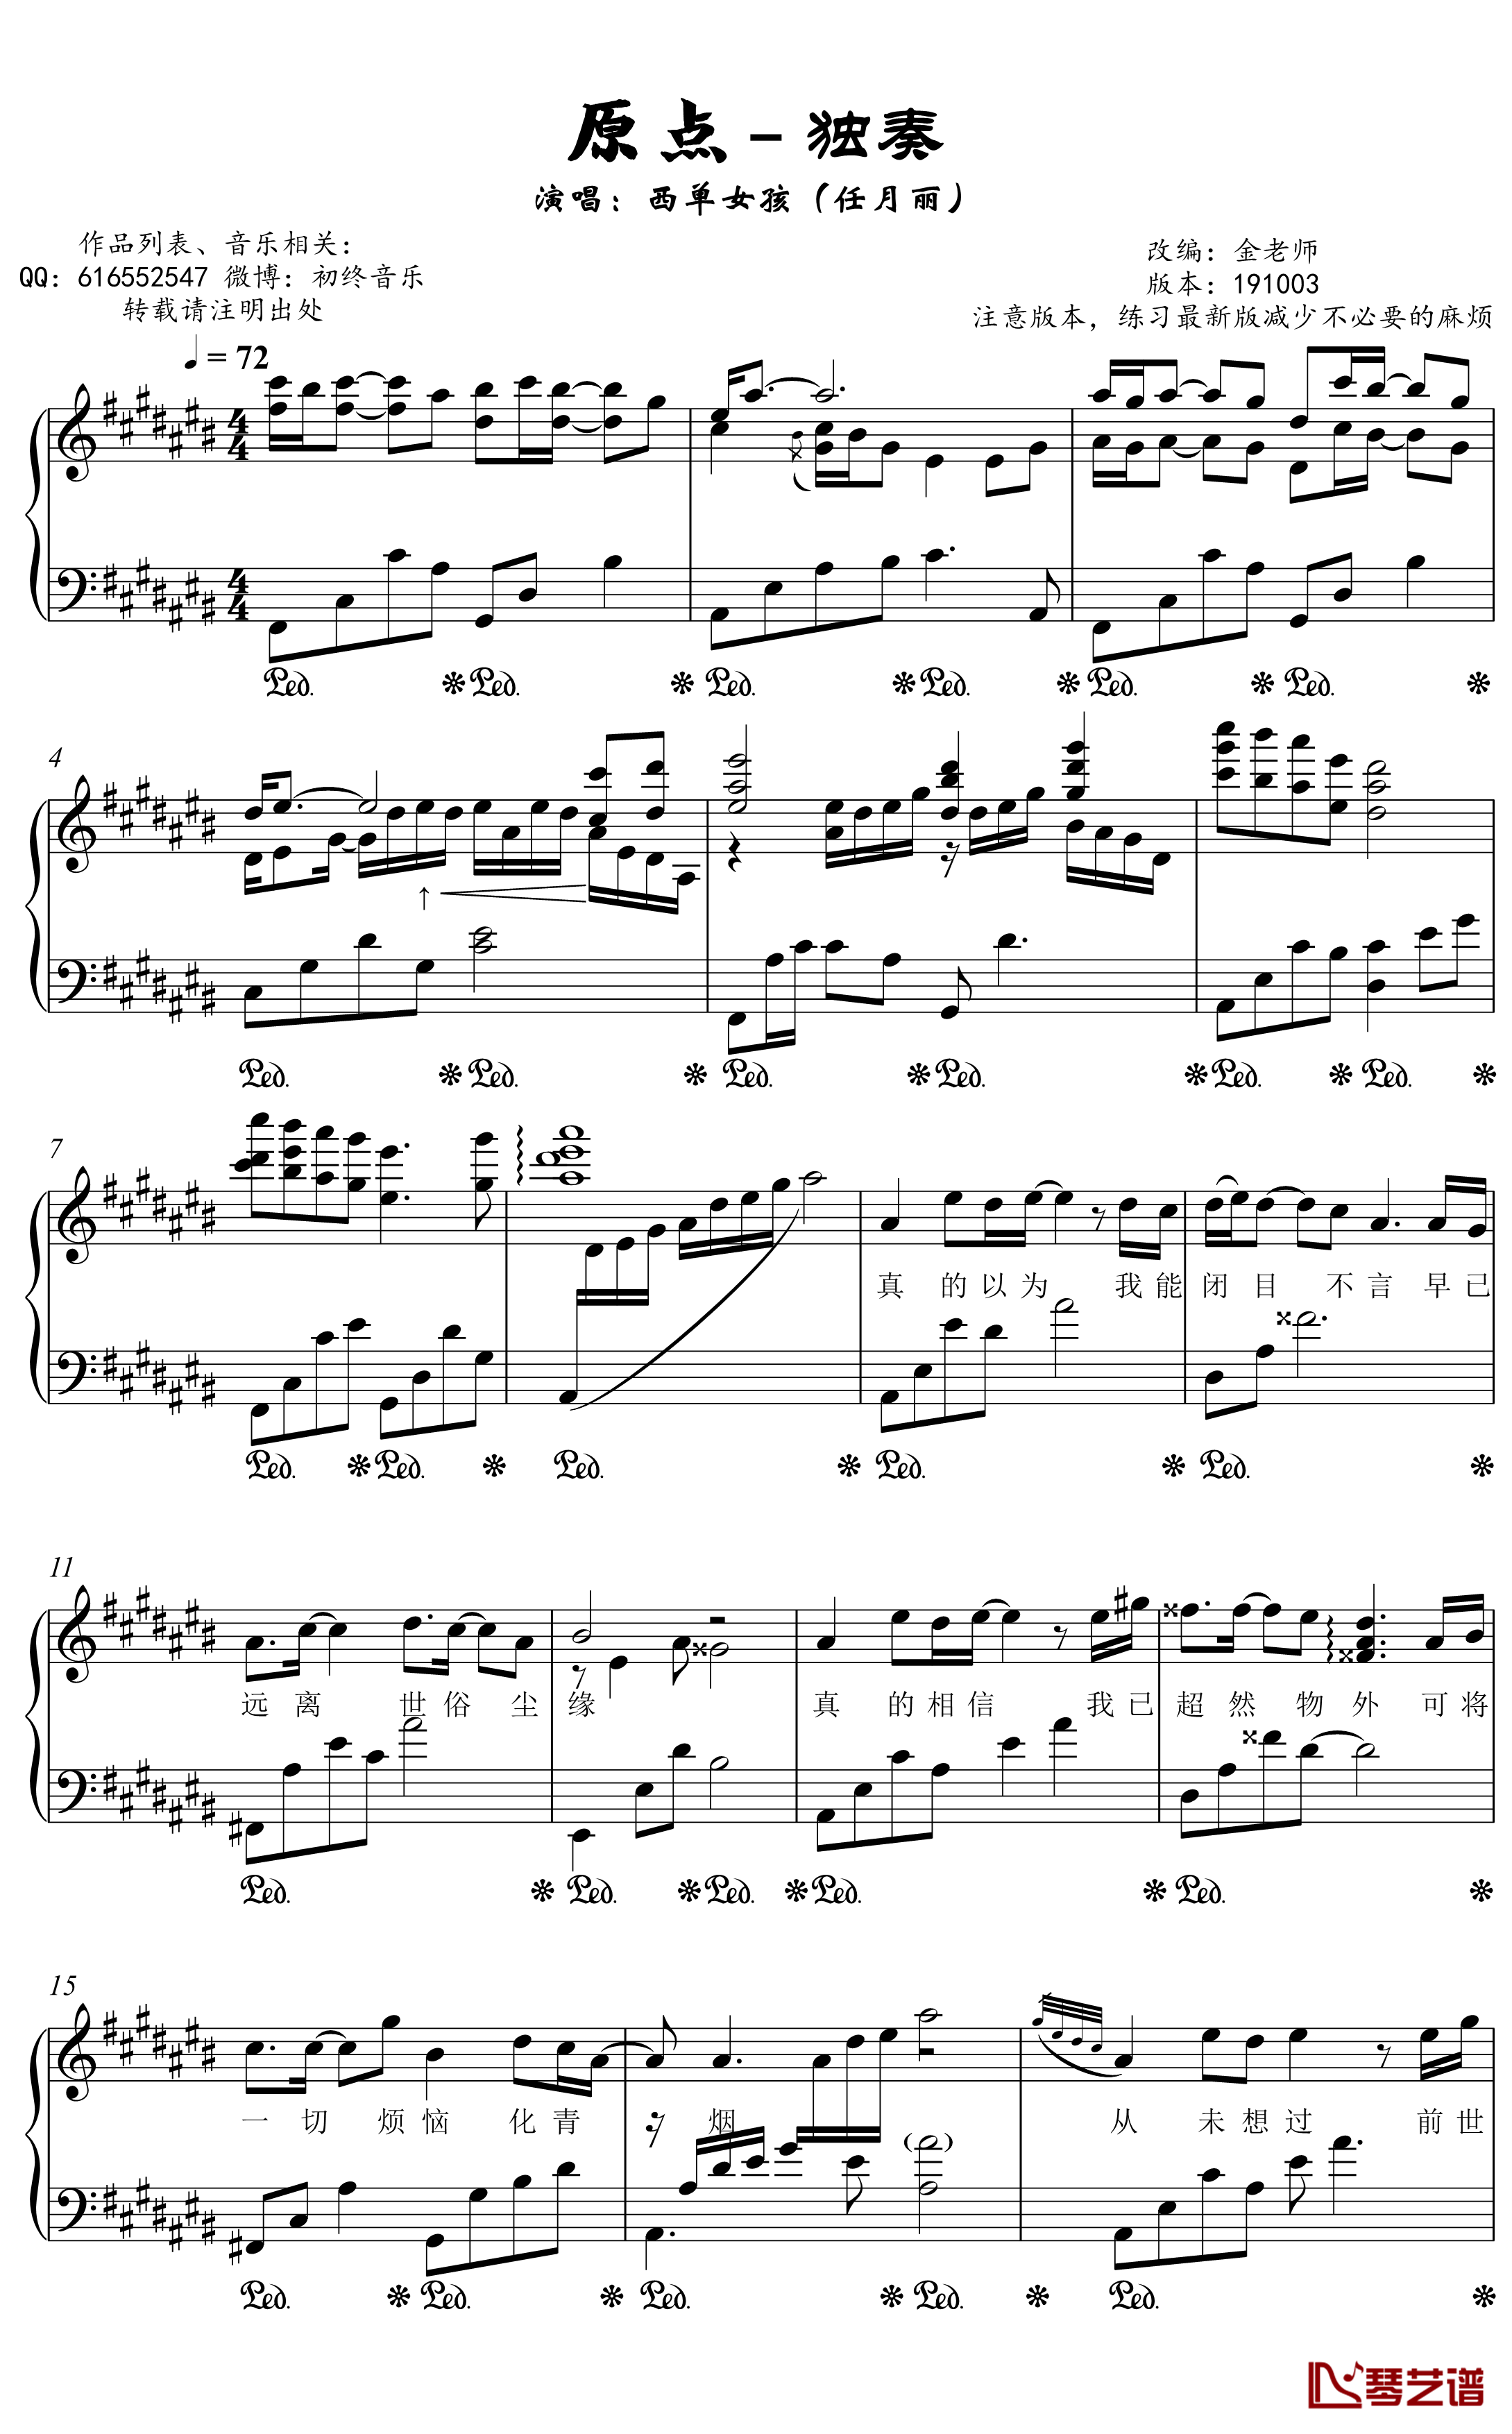 原点钢琴谱 画江湖与不良人-金老师独奏1910032